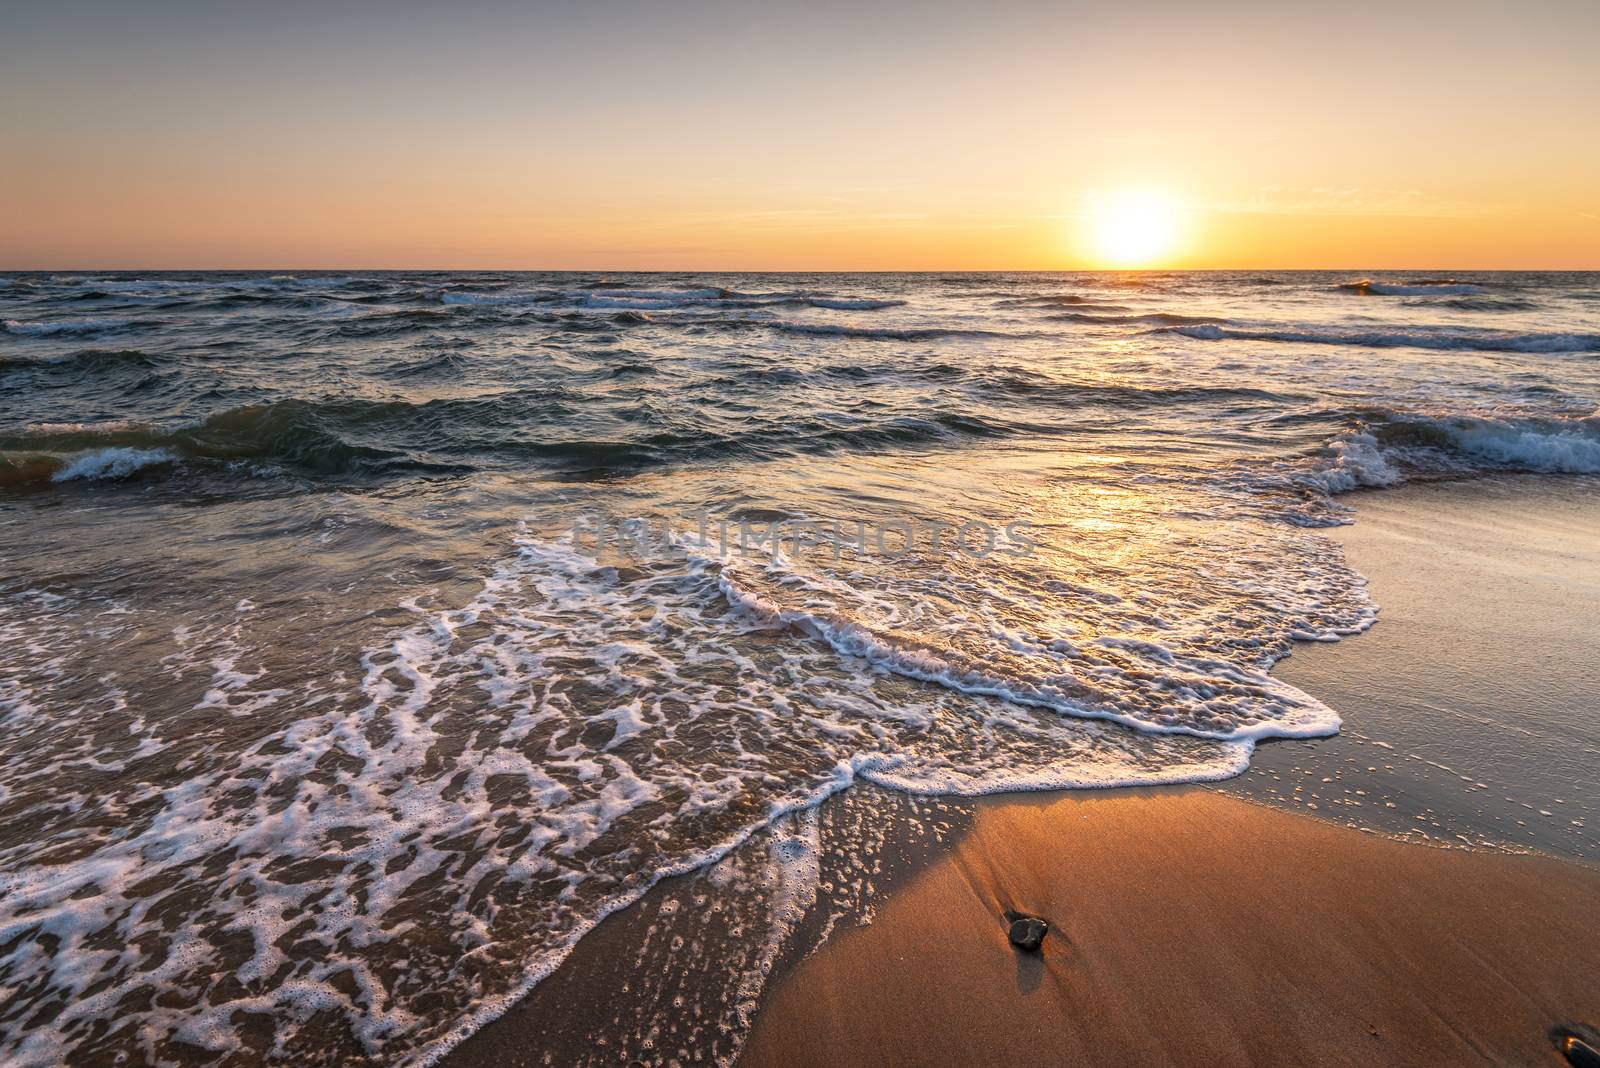 Waves at sunset at mediterranean sea.